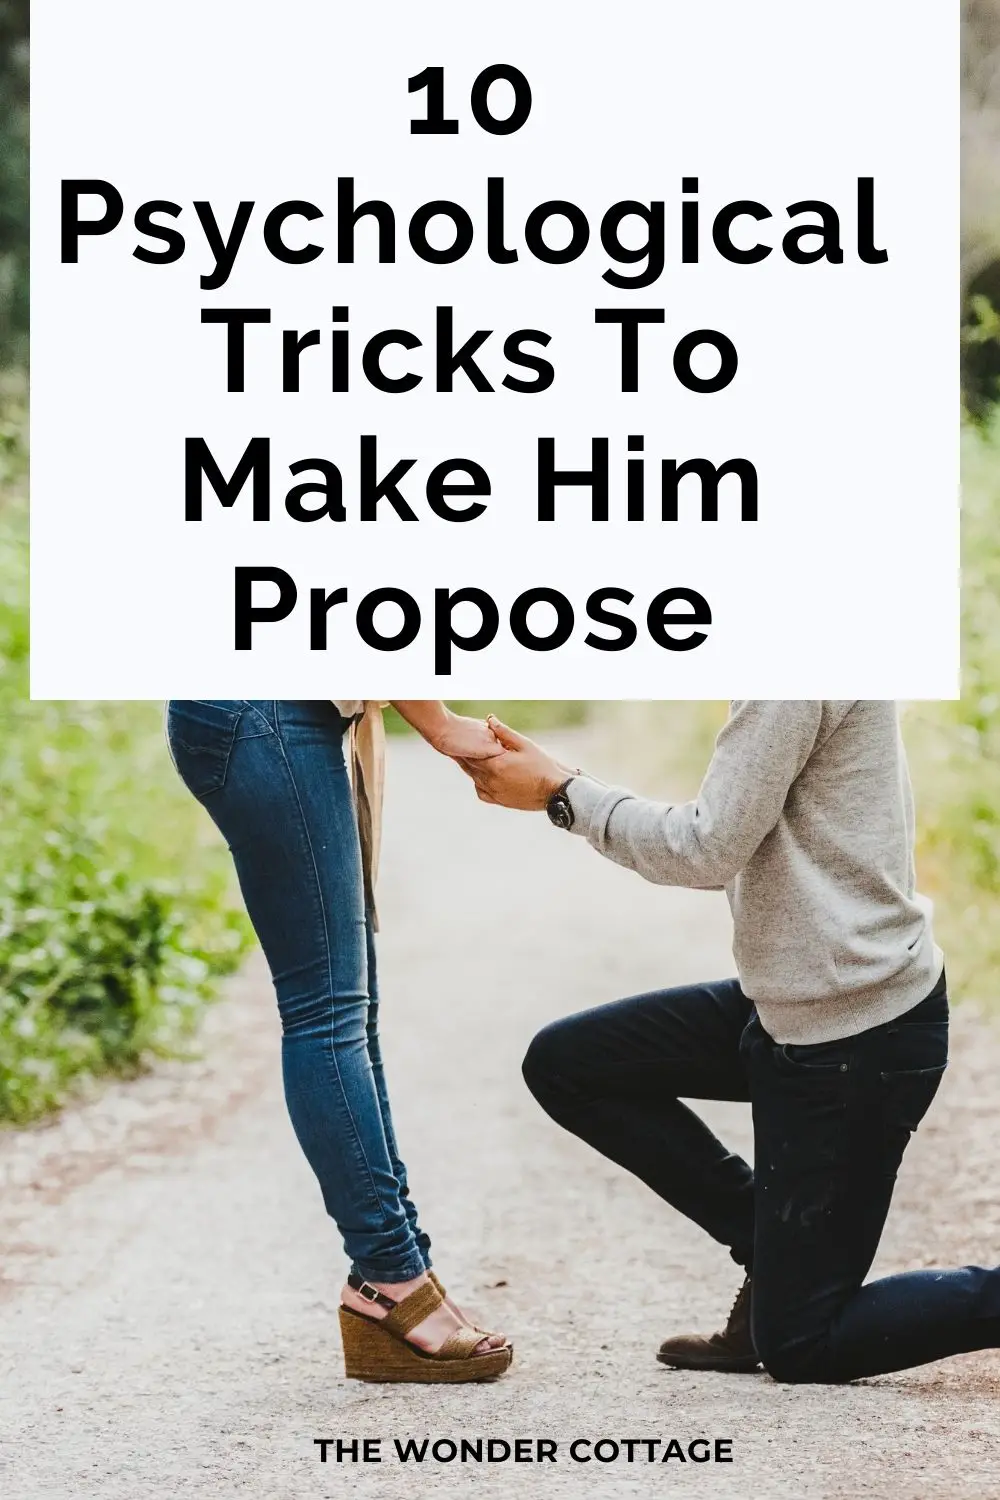 10 psychological tricks to make him propose